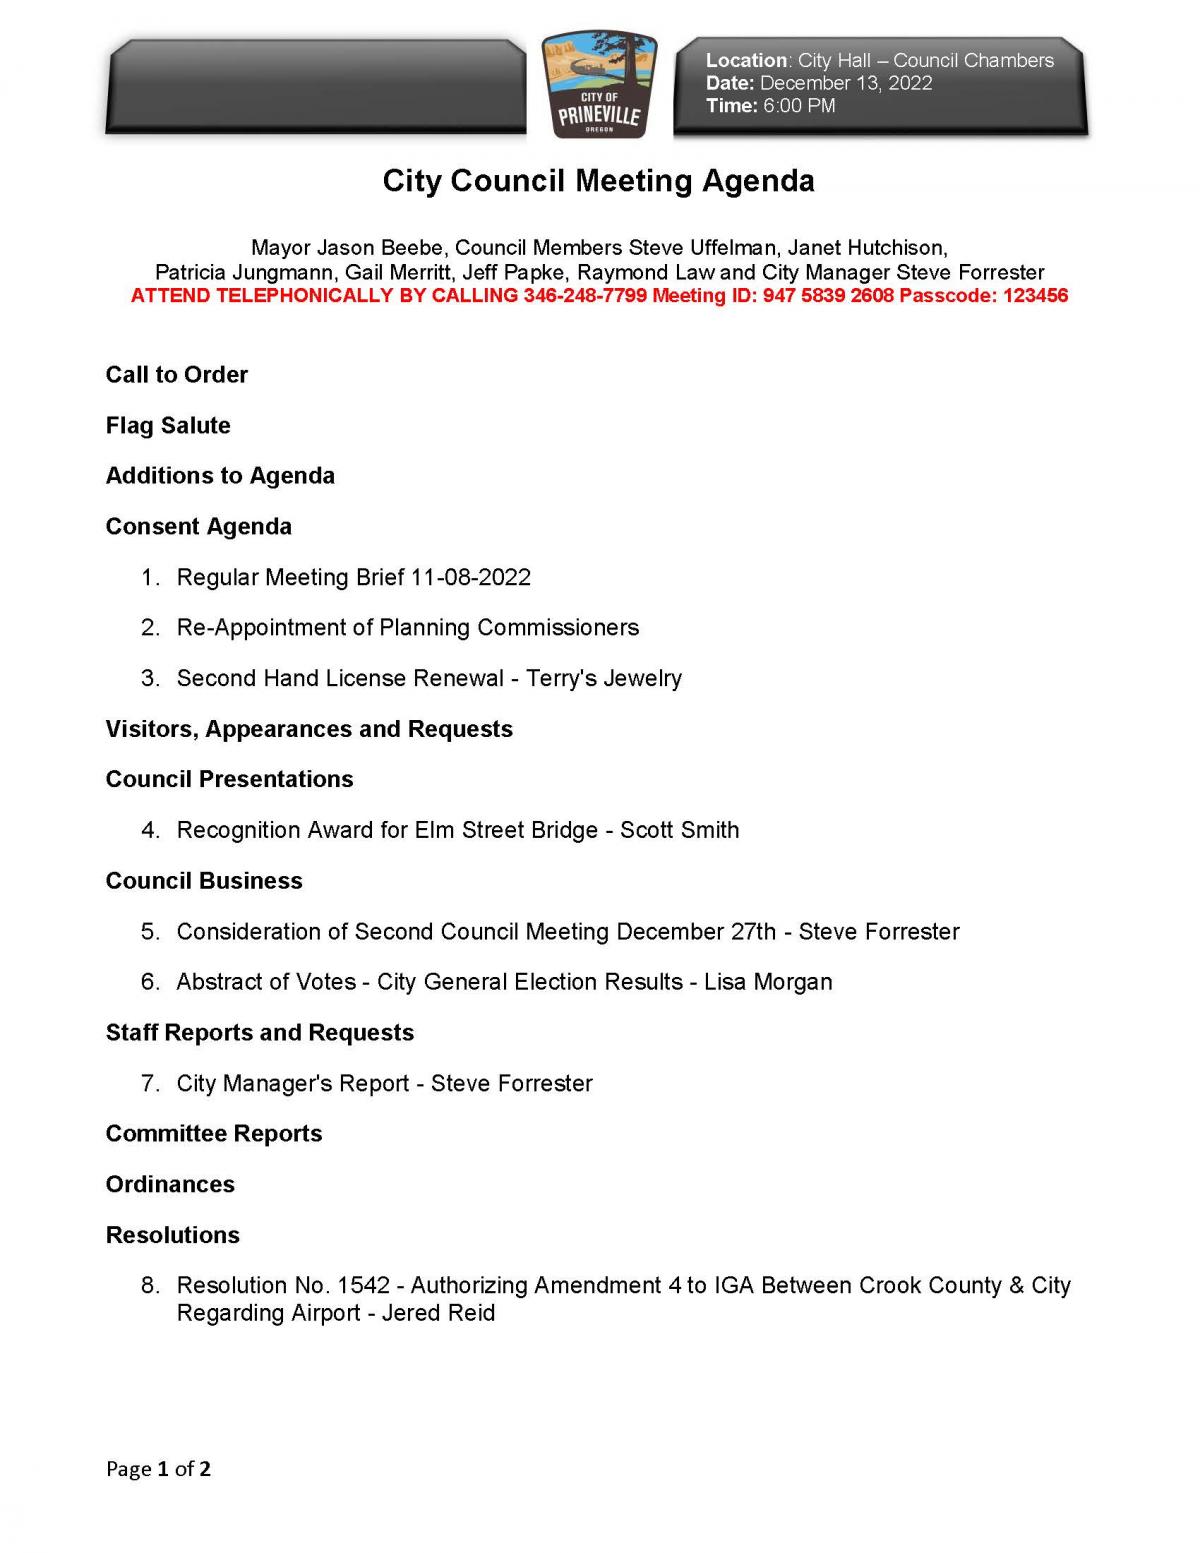 Council Agenda 12-13-2022 Page 1